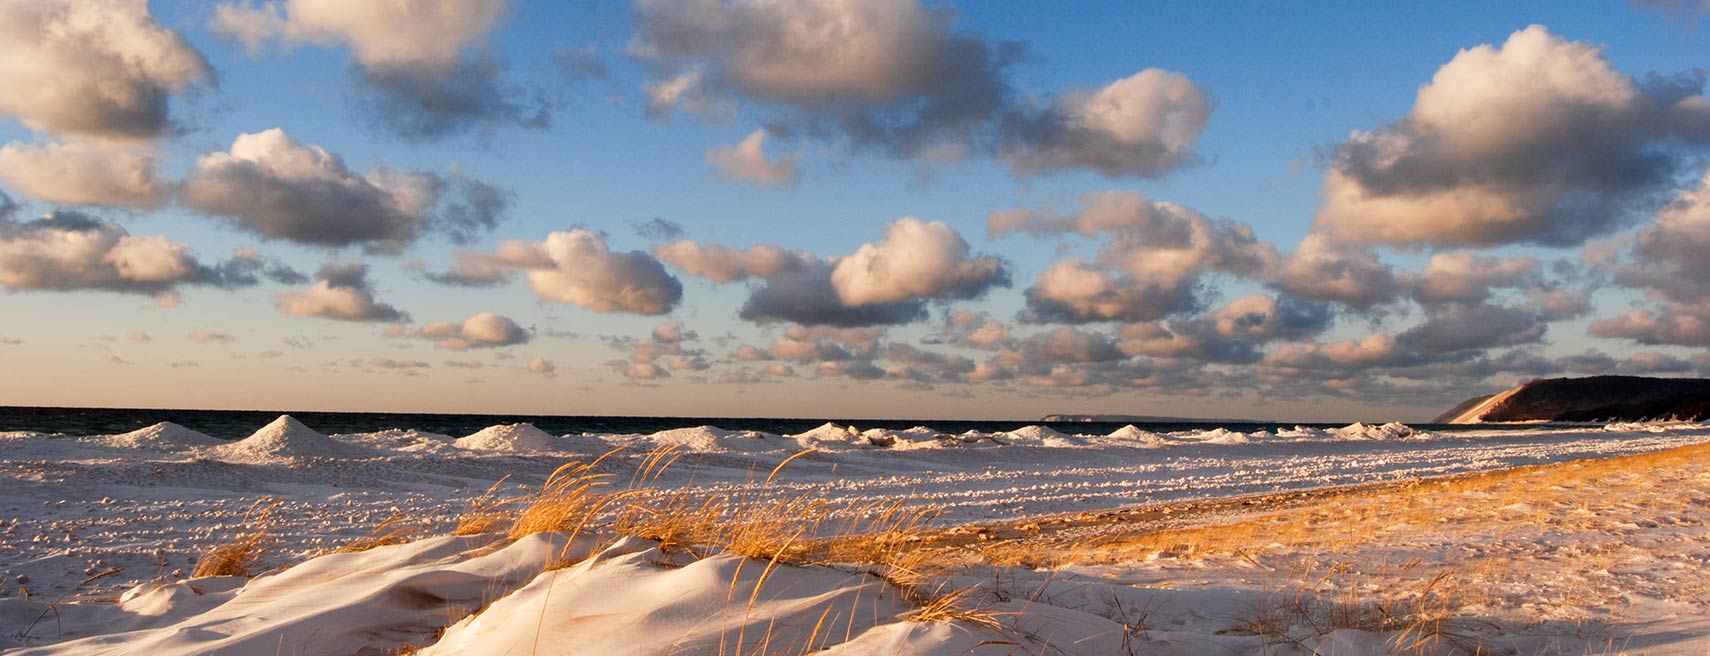 Winter on Lake Michigan, Sleeping Bear Dunes National Lakeshore